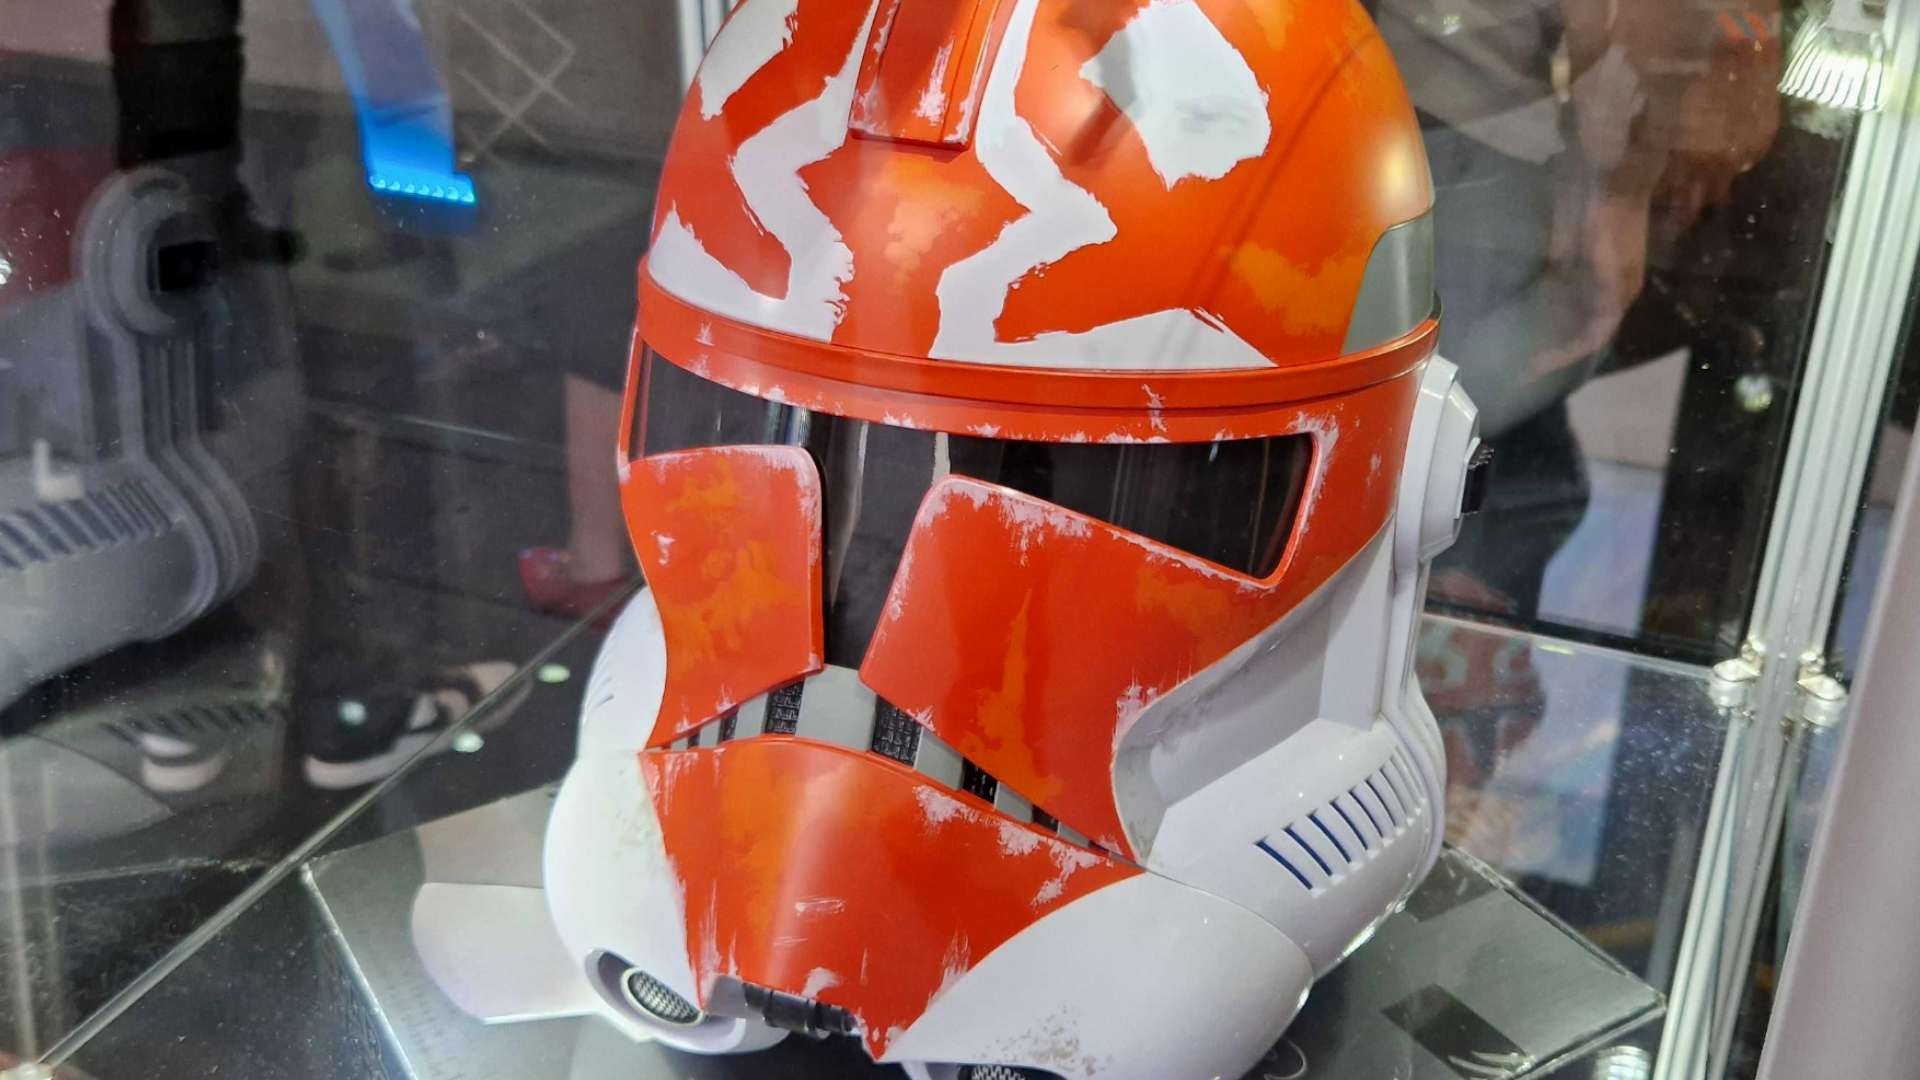 The Black Series Ahsoka's Clone Trooper helmet in a glass case